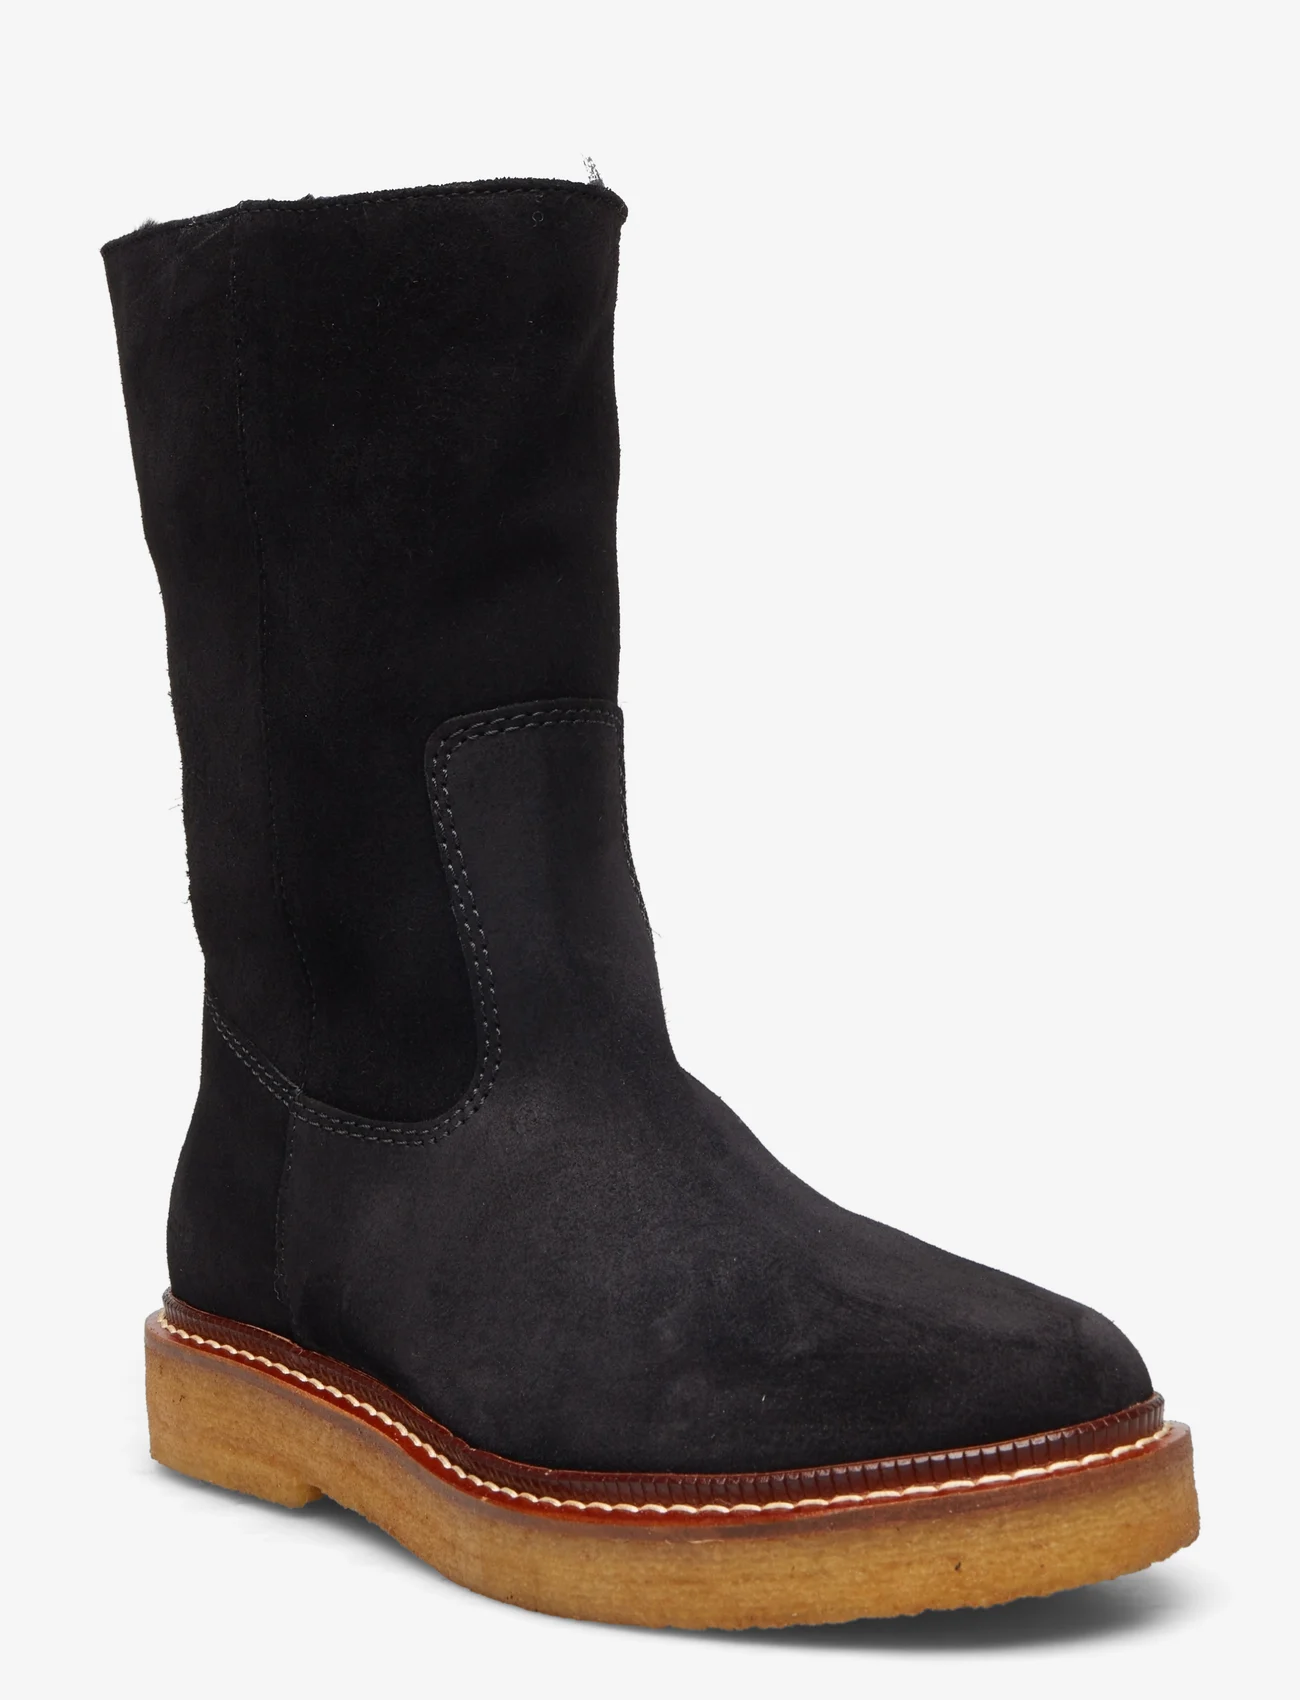 ANGULUS - Boots - flat - flat ankle boots - 1163/2014 black/black lamb woo - 0